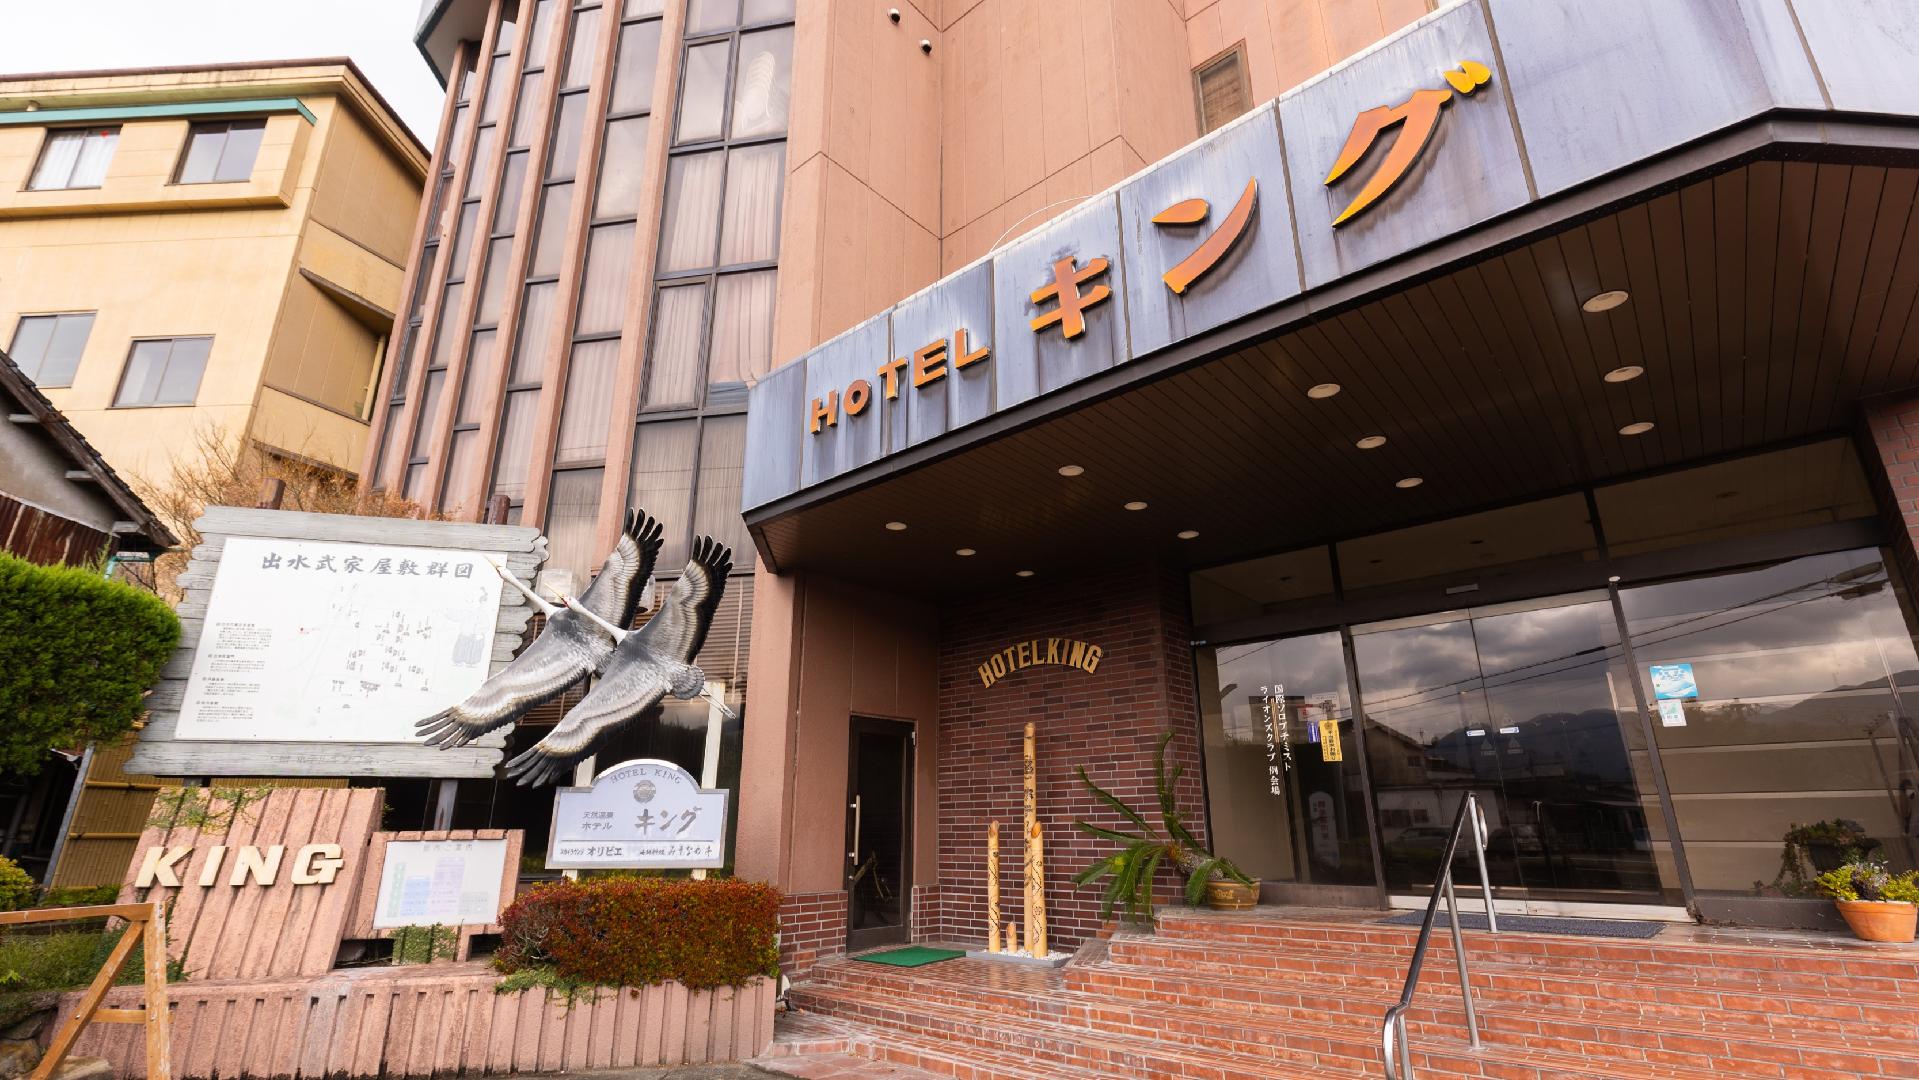 호텔 킹 (가고시마)